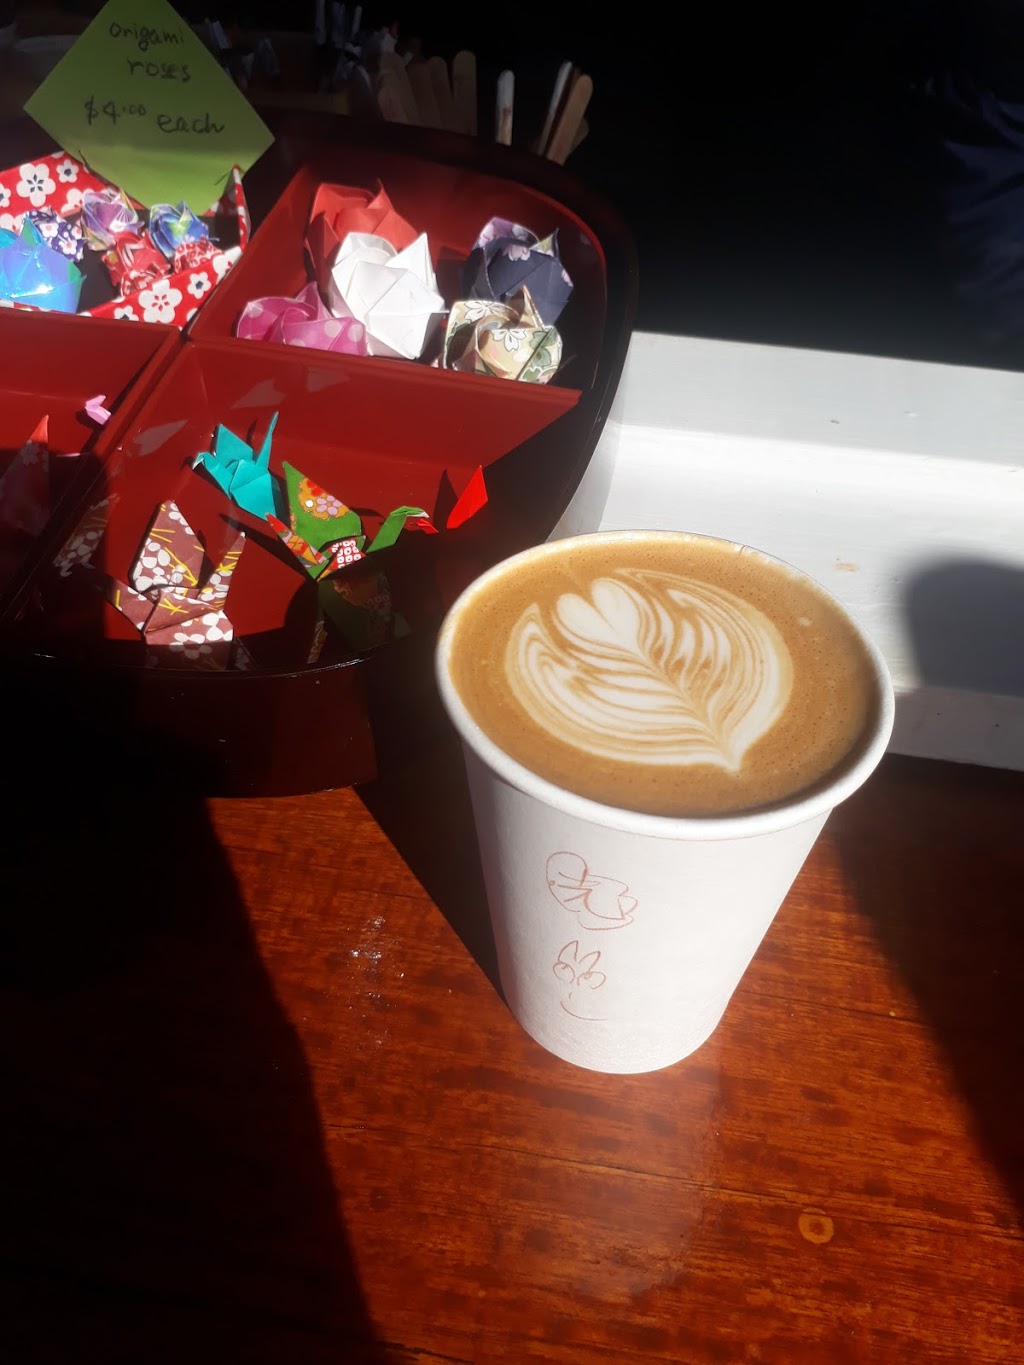 Origami Coffee | cafe | 19 Dorron Ave, Mallacoota VIC 3892, Australia